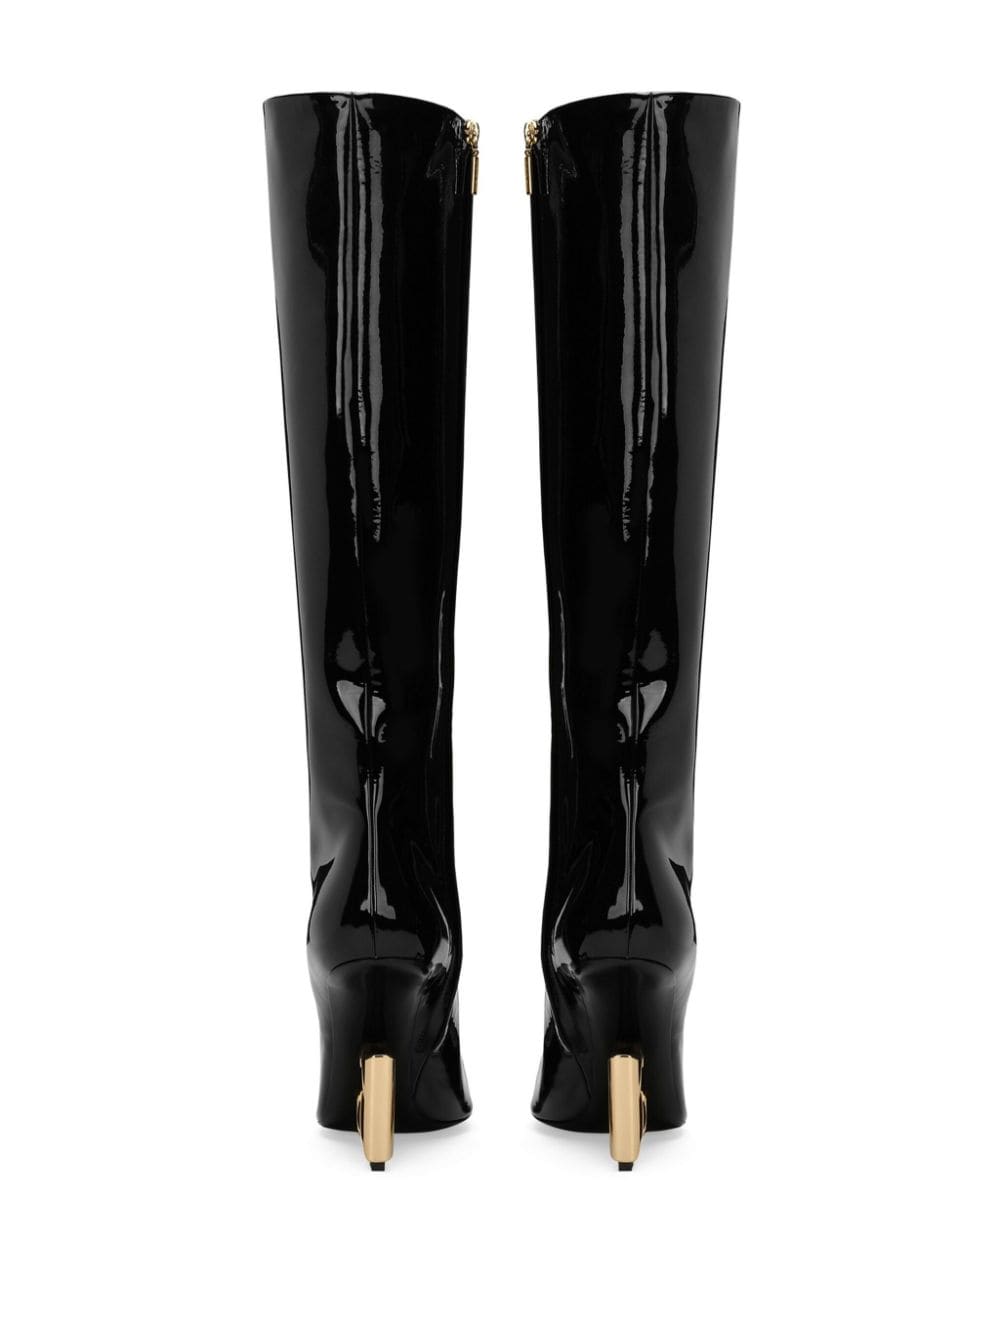 Dolce & Gabbana 105mm DG-heel High Boots - Farfetch